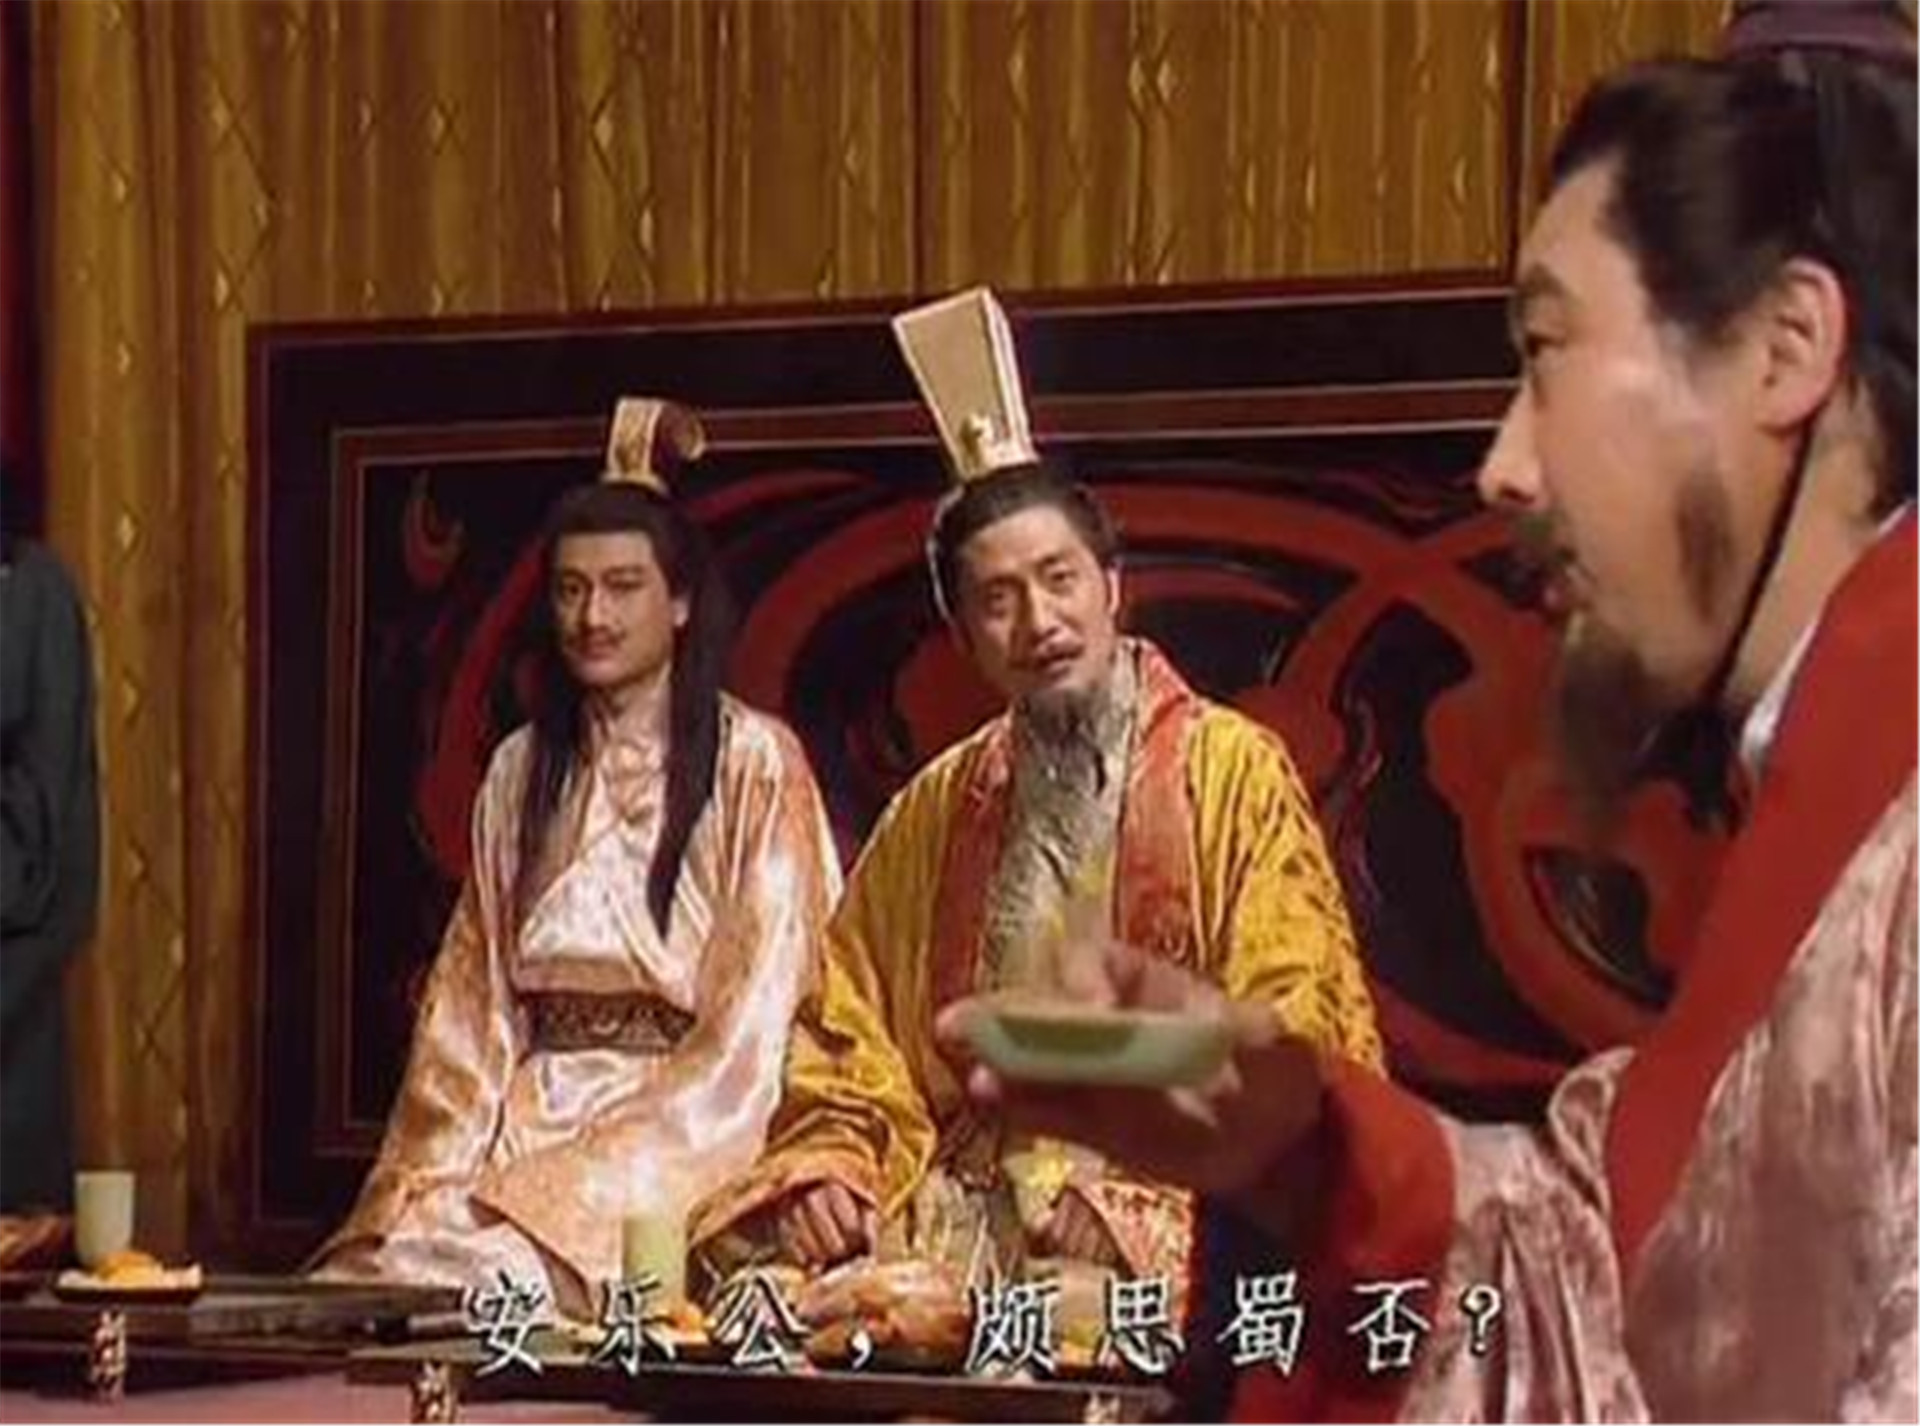 刘禅投降后写下3字,司马昭大笑:免死,众人不解,昭:倒过来念